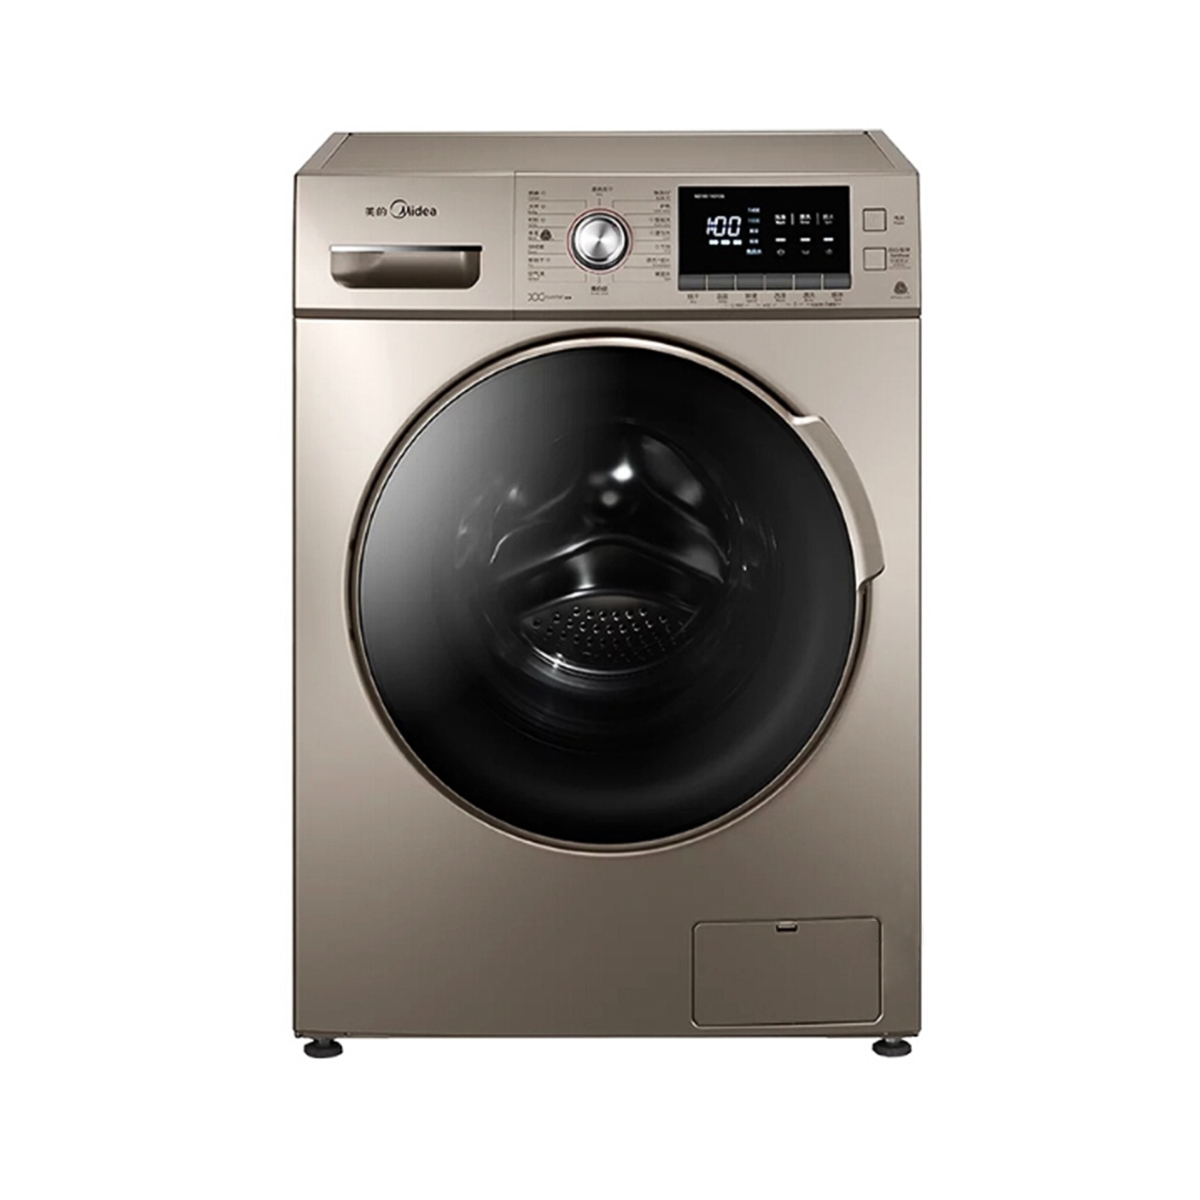 Midea/美的 MD100-1431DG洗衣机 说明书.pdf